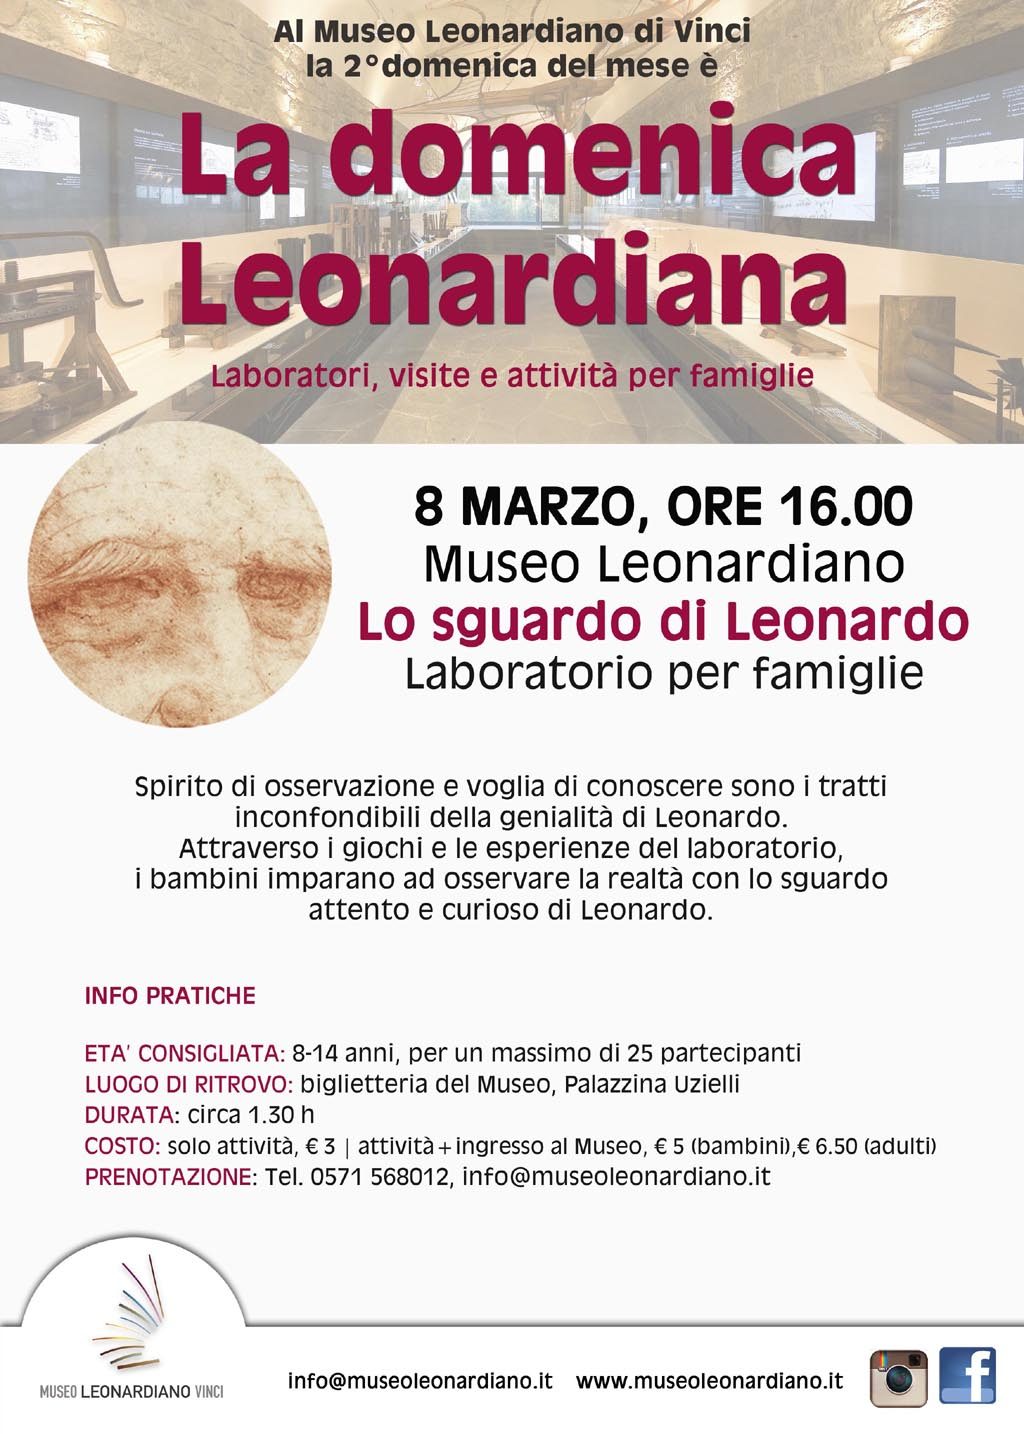 Al Museo Leonardiano la seconda domenica del mese è dedicata alle famiglie